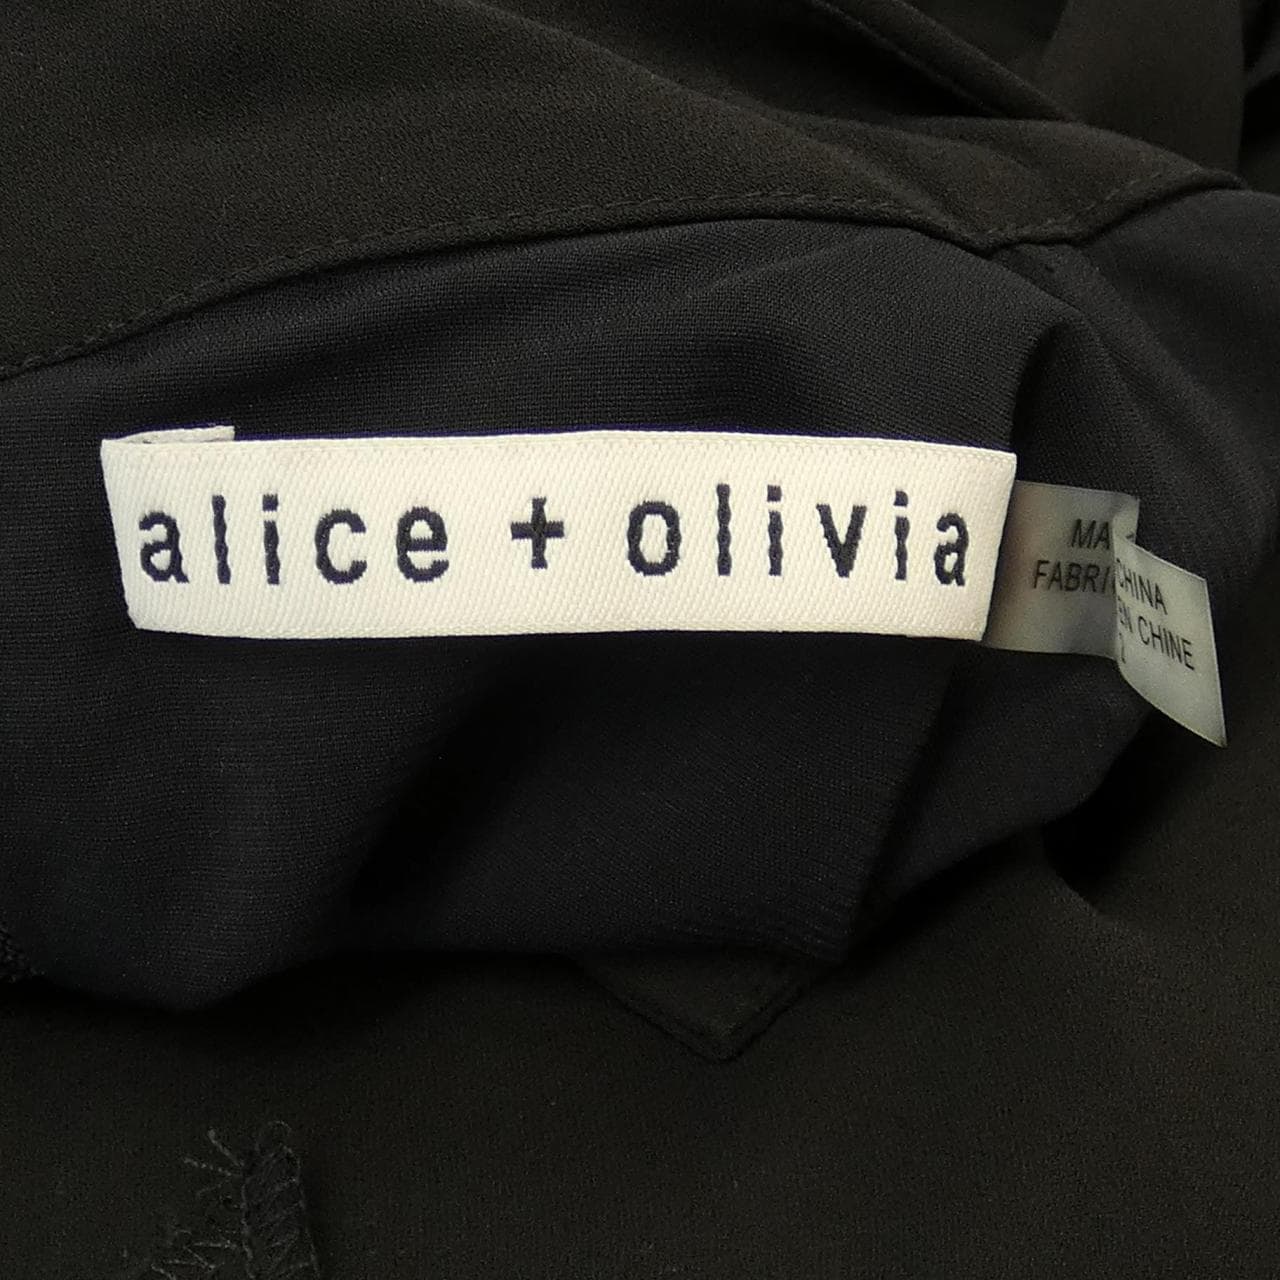 アリスアンドオリビア ALICE+OLIVIA ワンピース